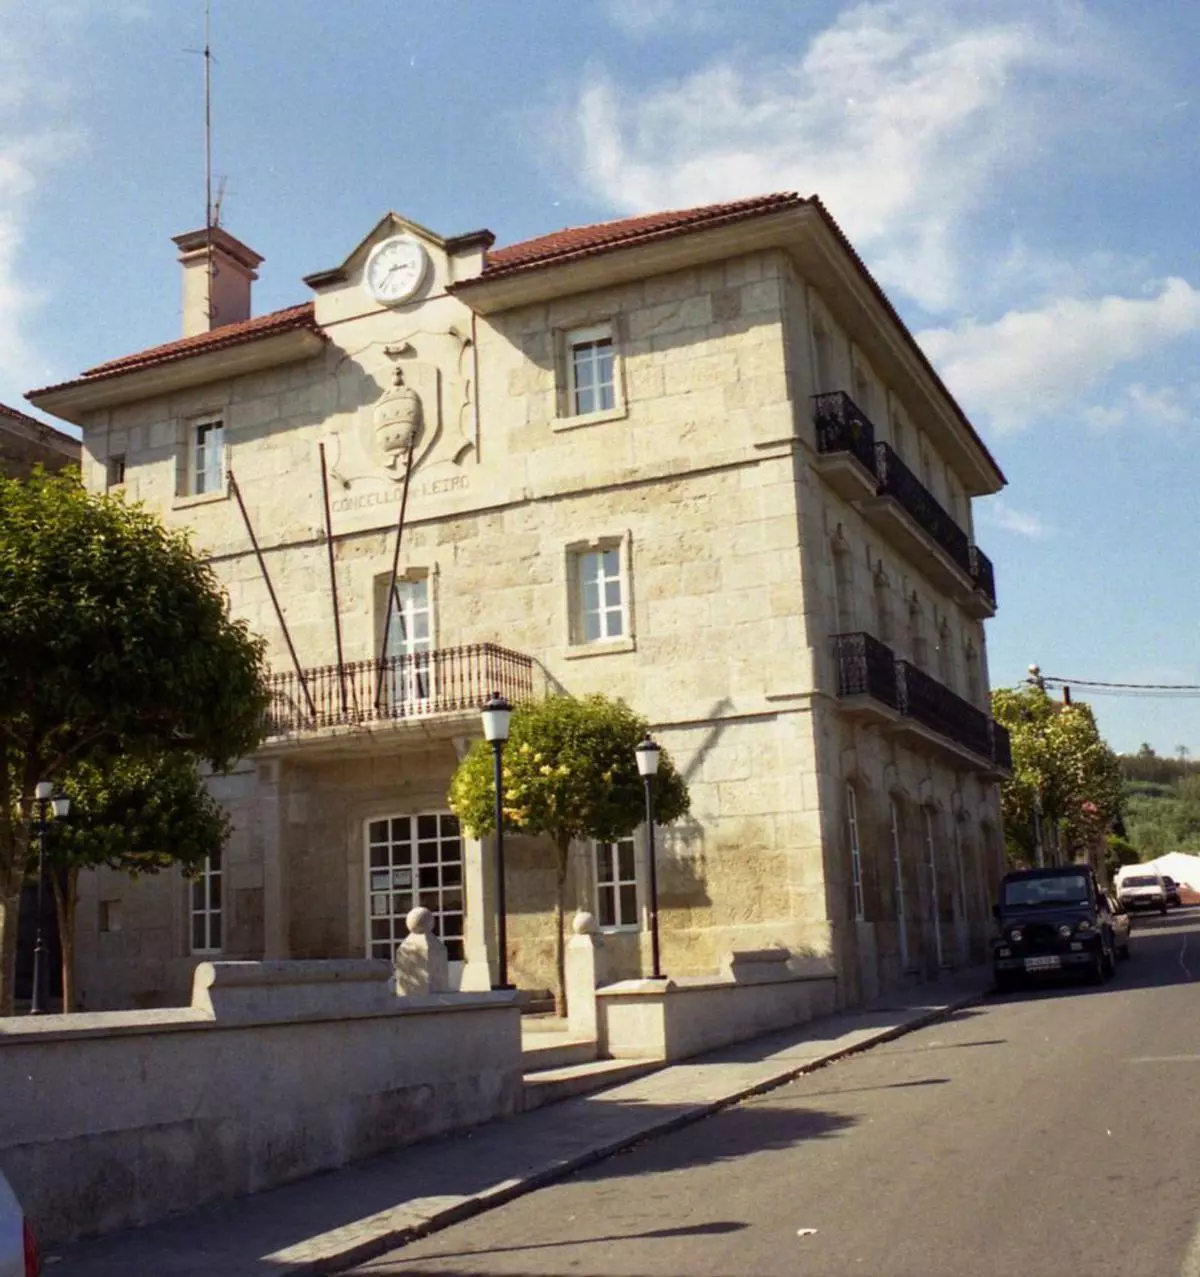 En el Concello también se vivía: fue el hogar de secretarios, médicos y maestros en Ourense